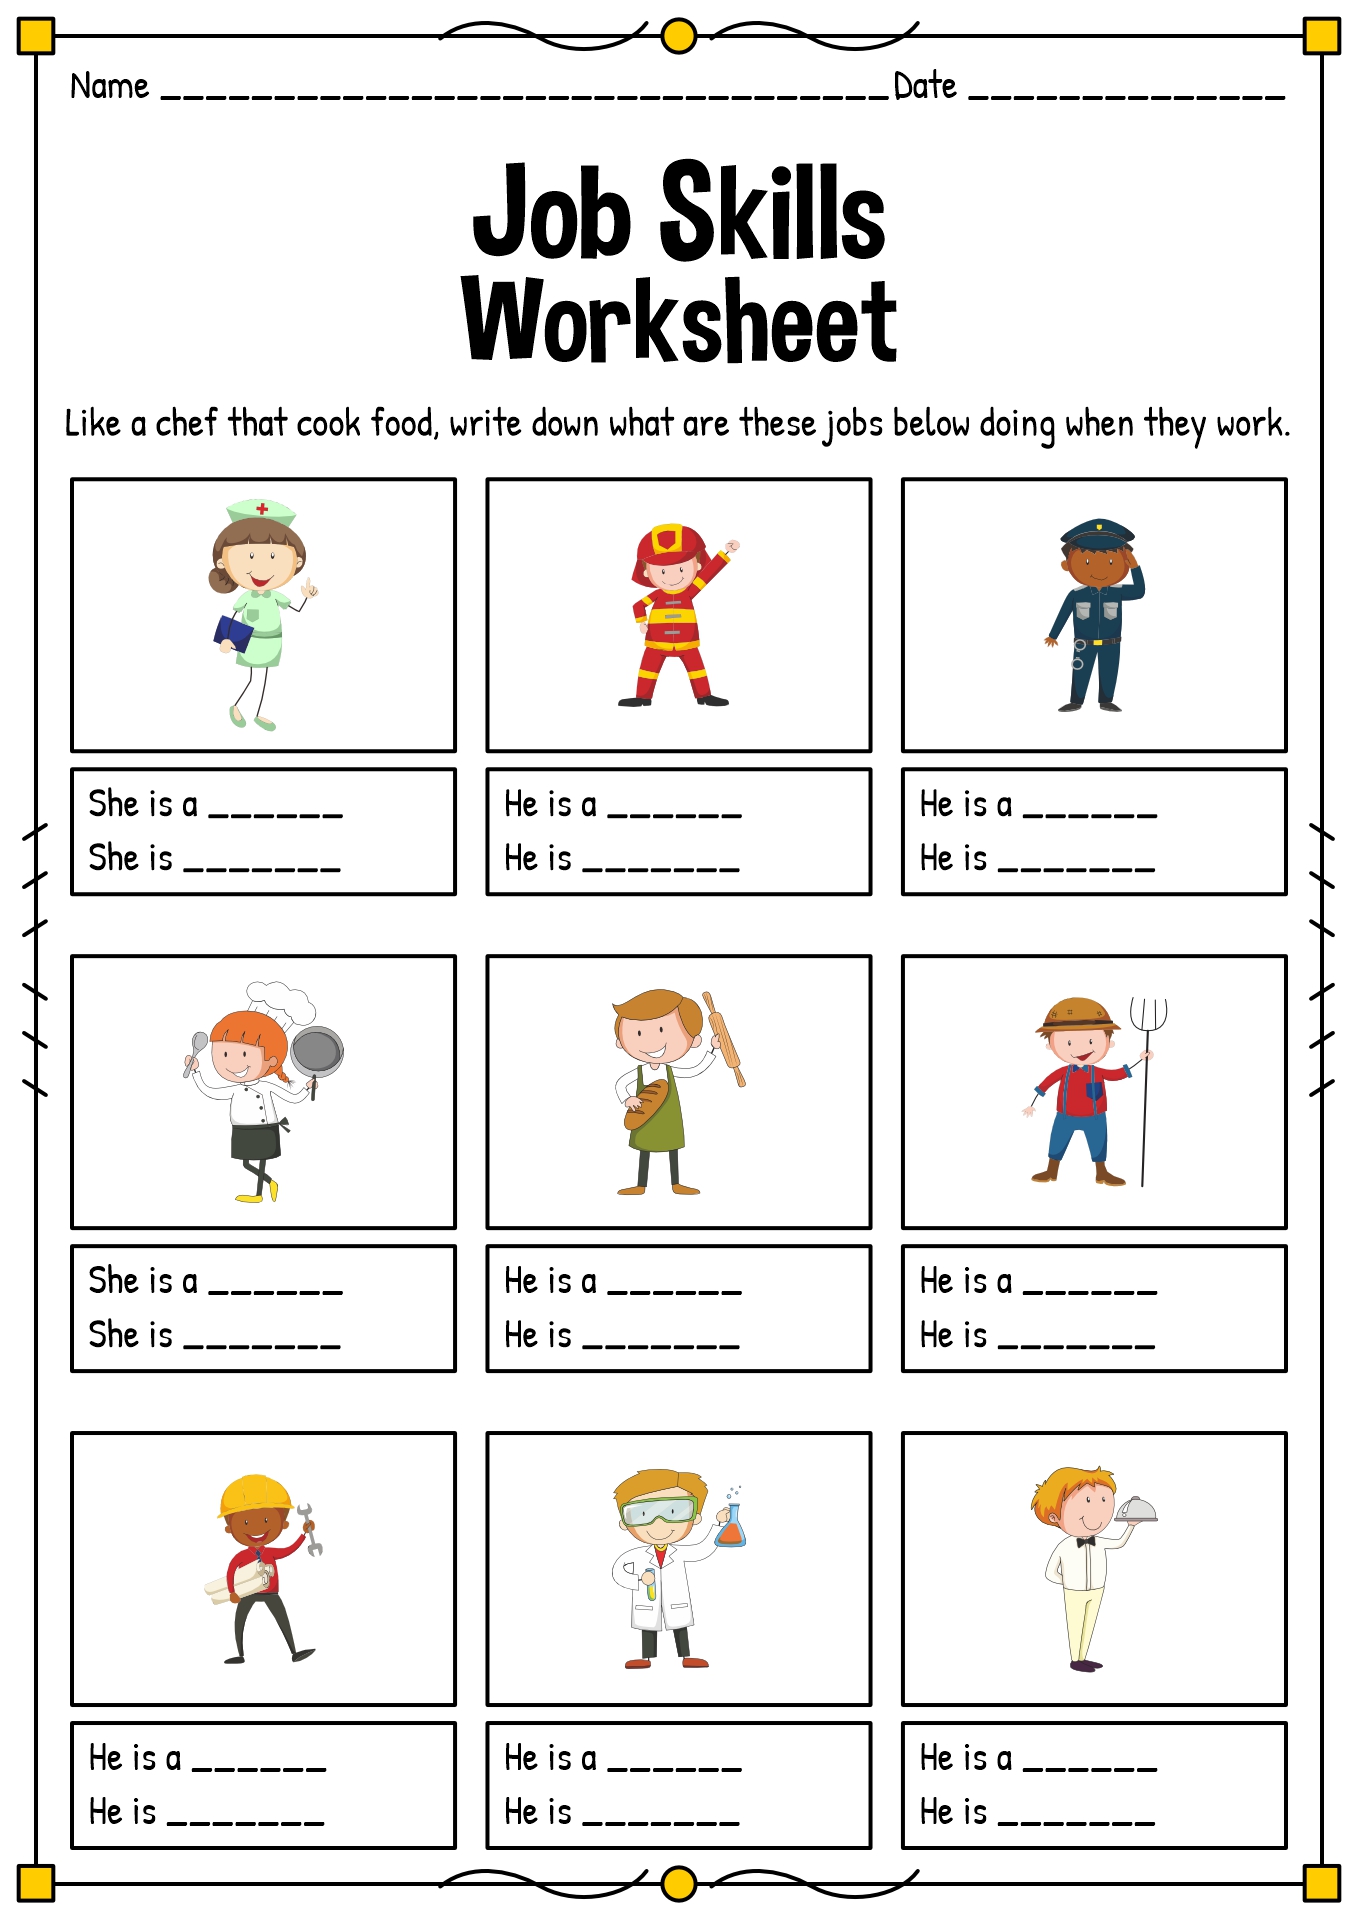 Job-Skills Worksheets for Kids Image